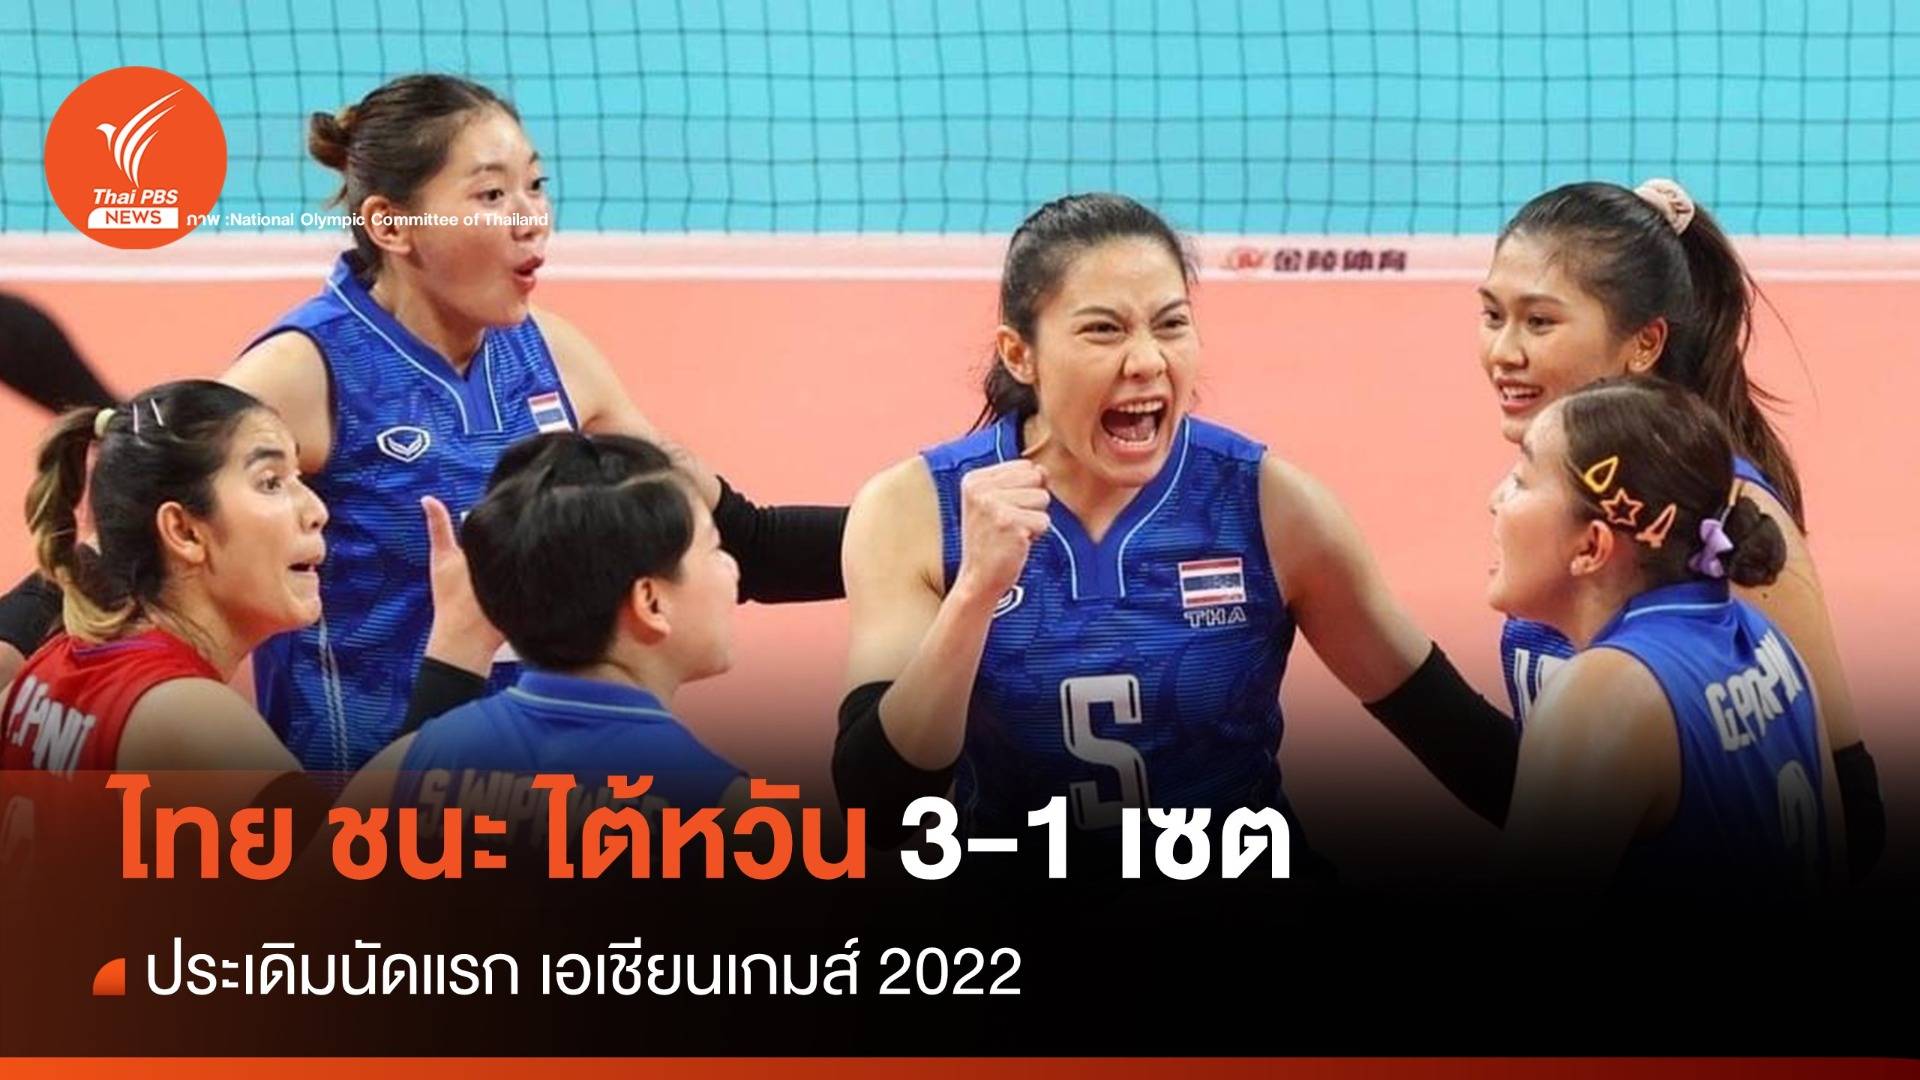 วอลเลย์บอลหญิงไทย ประเดิมนัดแรก ชนะ ไต้หวัน  3-1 เซต ศึกเอเชียนเกมส์ 